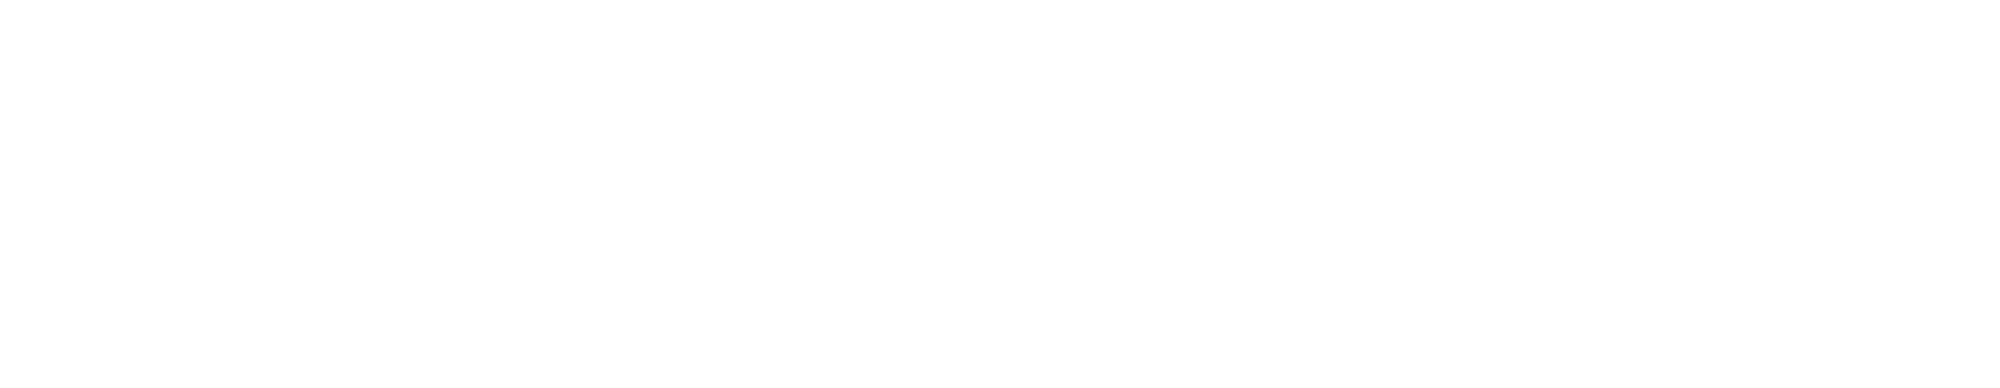 docs/PARL-logo-2.png